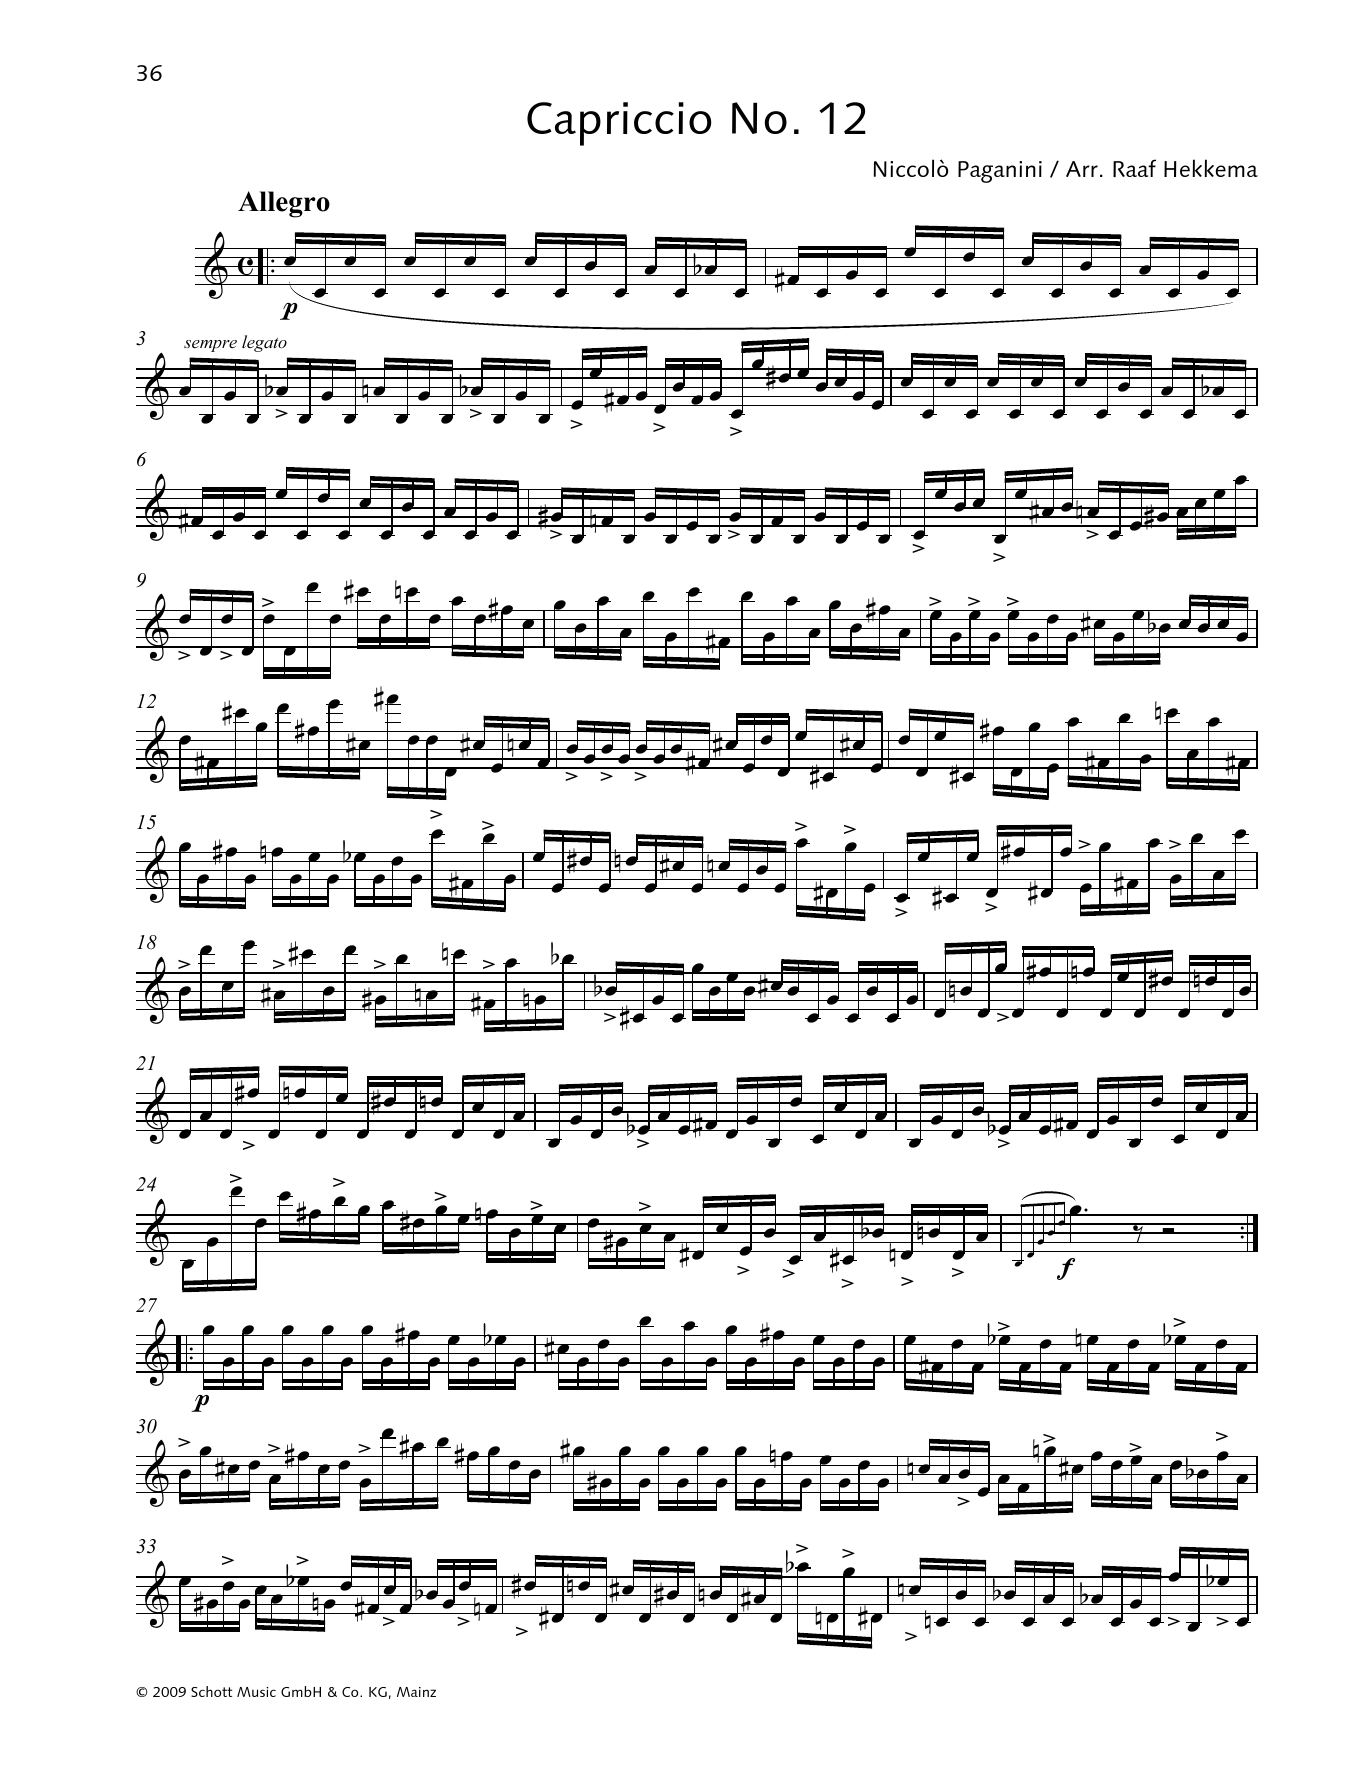 Download Niccolo Paganini Capriccio No. 12 Sheet Music